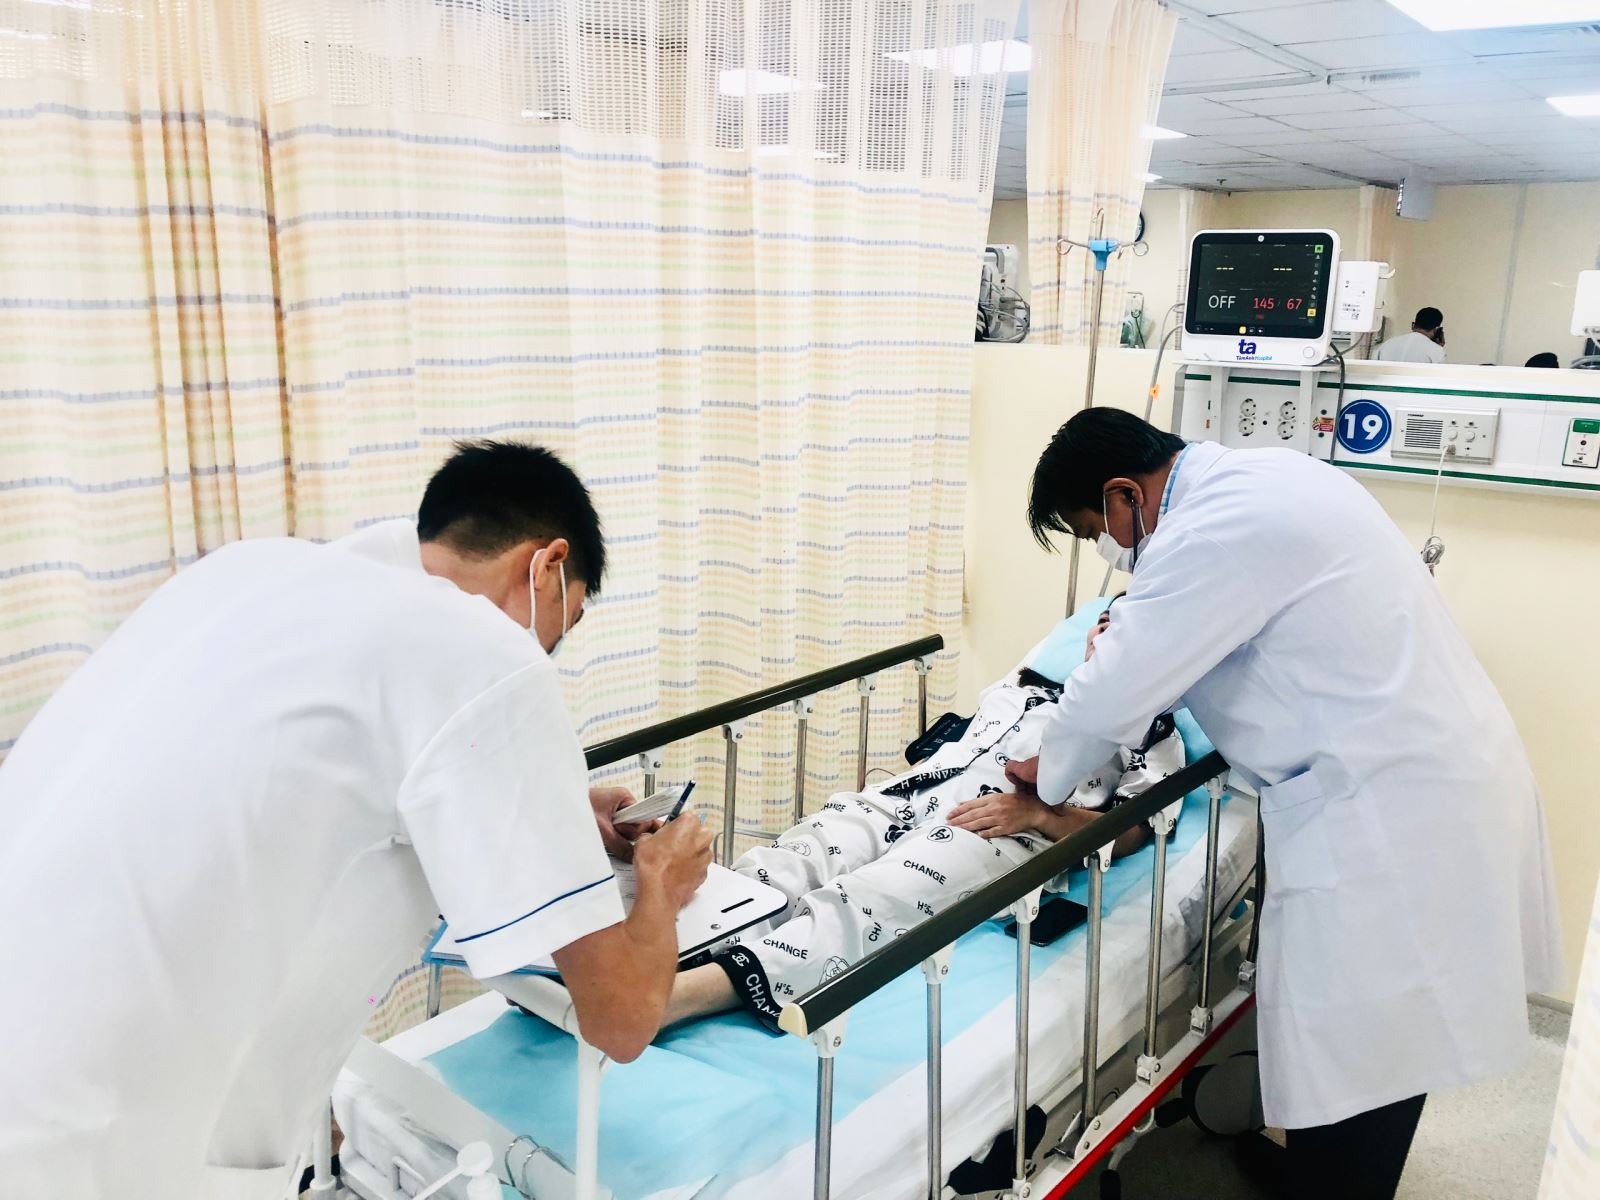 TP Hồ Chí Minh: 5 người phải nhập viện sau ăn bánh canh ghẹ - Ảnh 1.